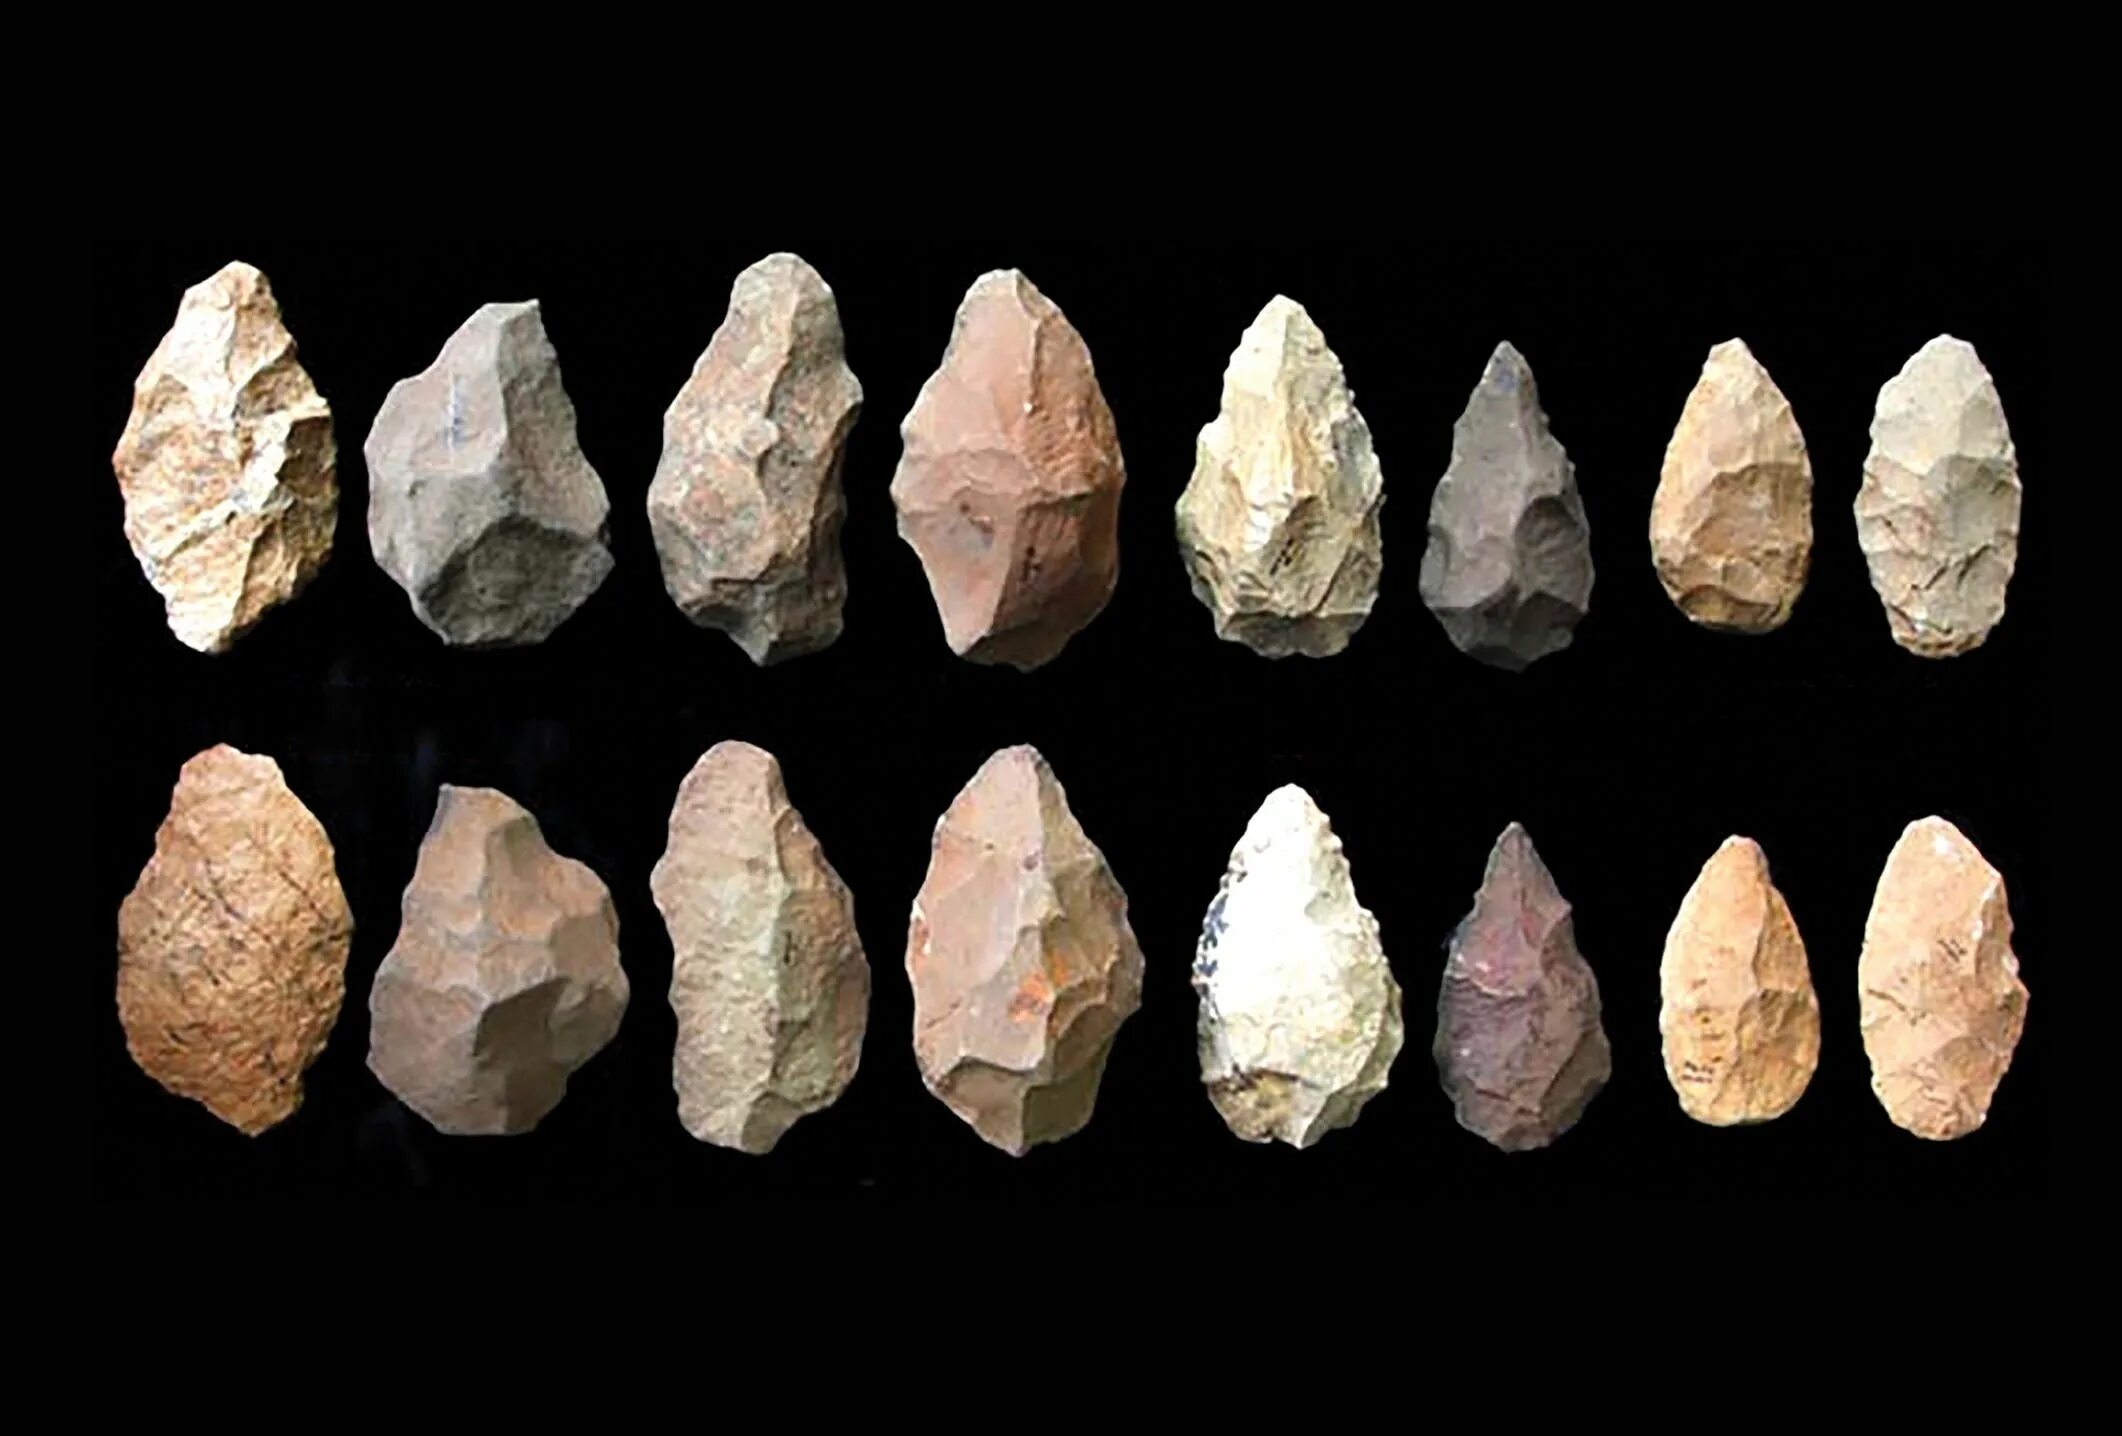 Stone tool. Каменные орудия палеолита. Homo habilis древнейшие каменные орудия. Хомо хабилис орудия труда. Нуклеус палеолит.